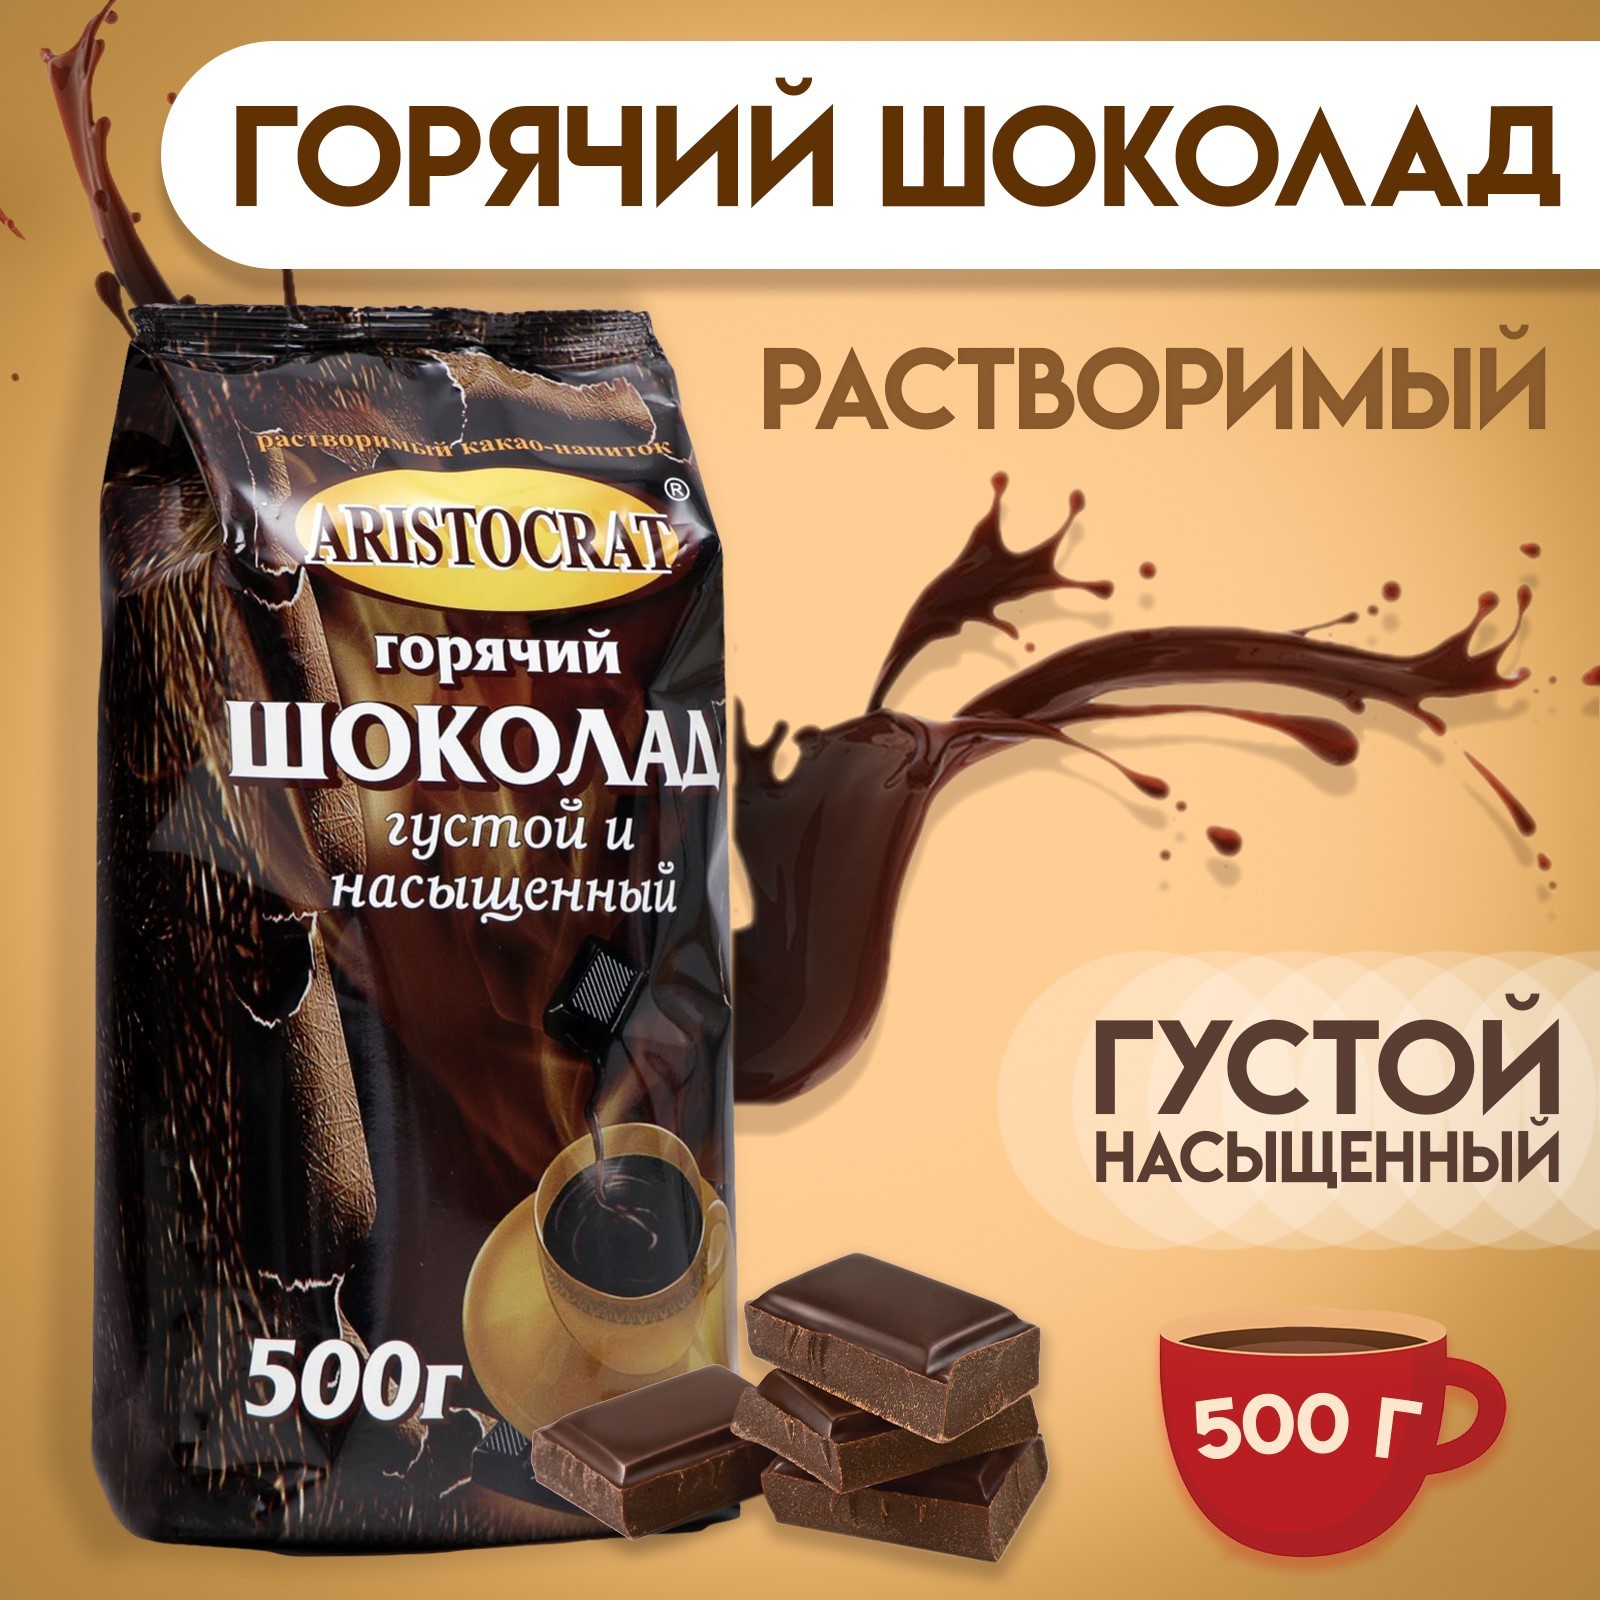 Купить горячий шоколад Aristocrat густой и насыщенный 500 г, цены на Мегамаркет | Артикул: 600001480241